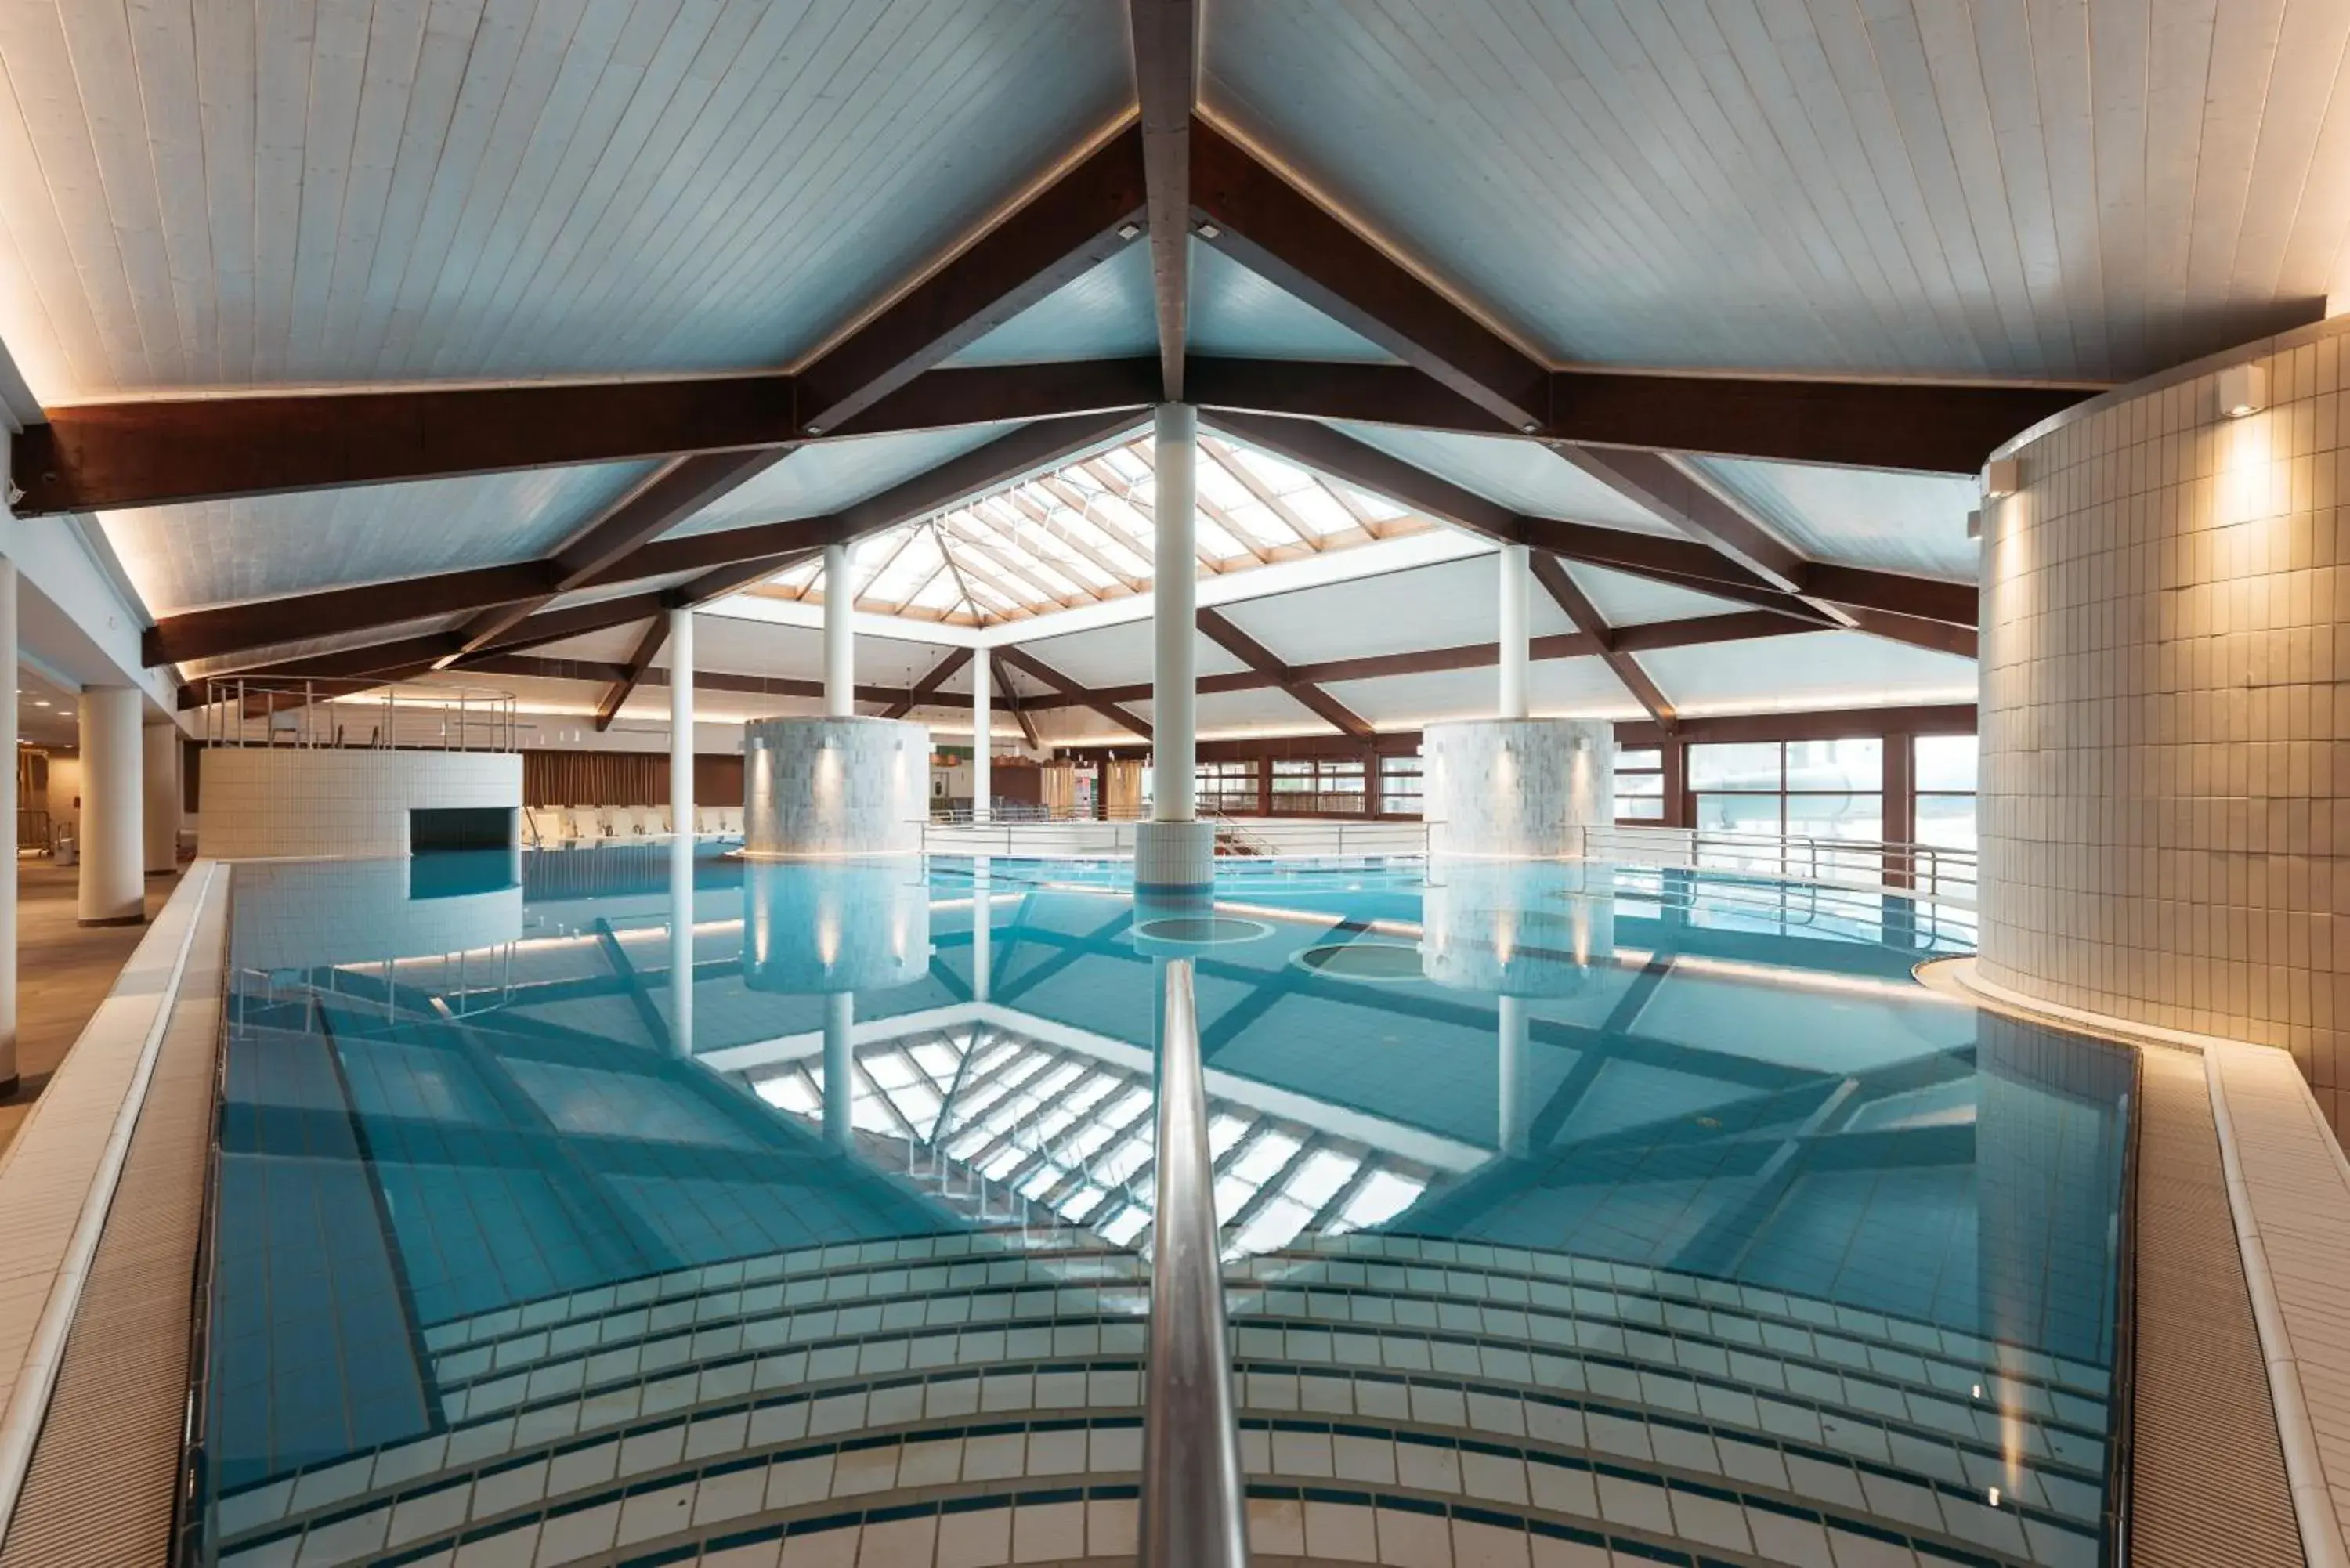 Swimming Pool in Hotel Termal - Terme 3000 - Sava Hotels & Resorts